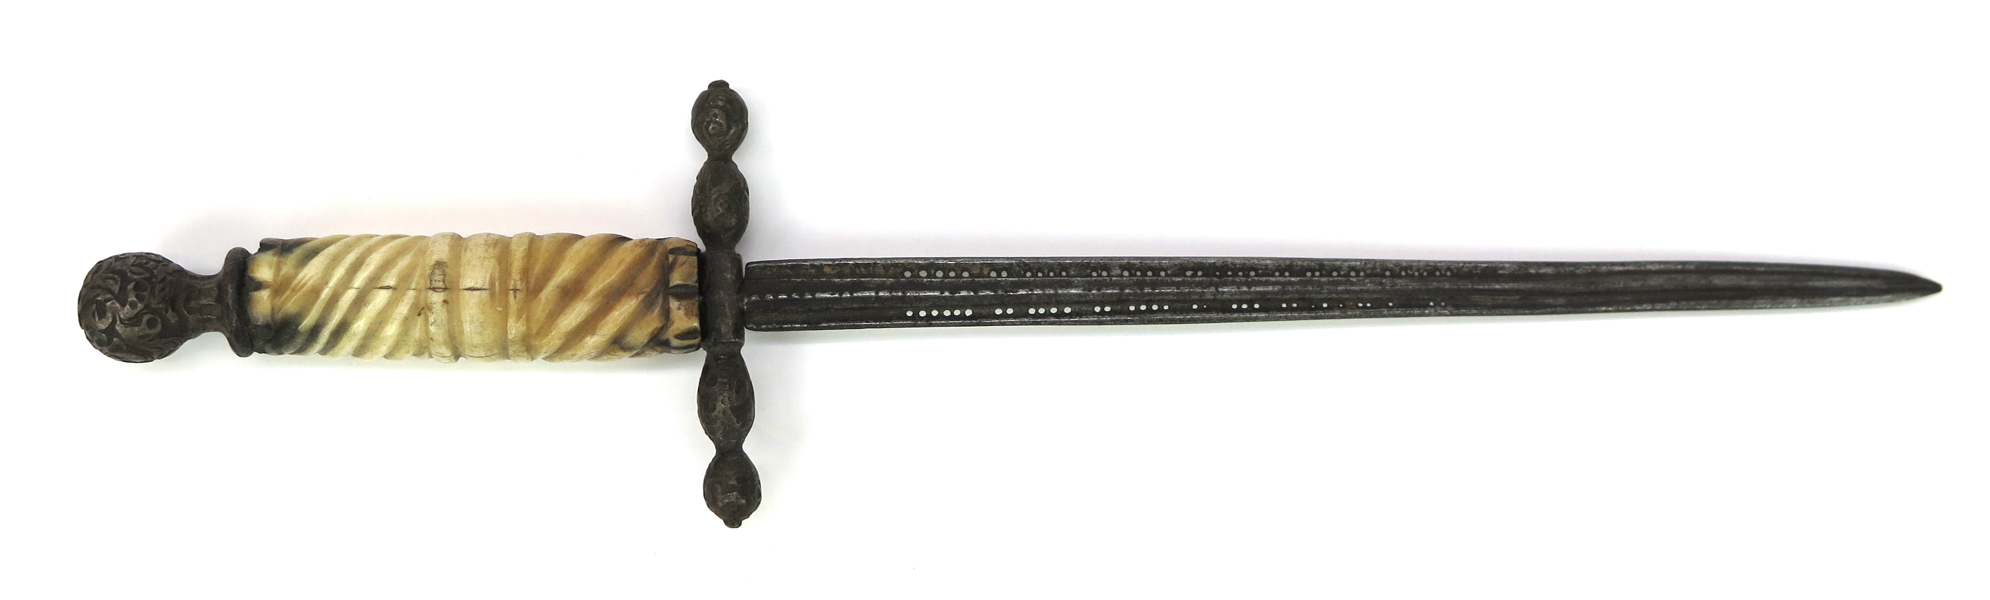 Vänsterhandsdolk, stål med benskaft, så kallad stiletto, 1600-tal, l 27 cm_38249a_lg.jpeg